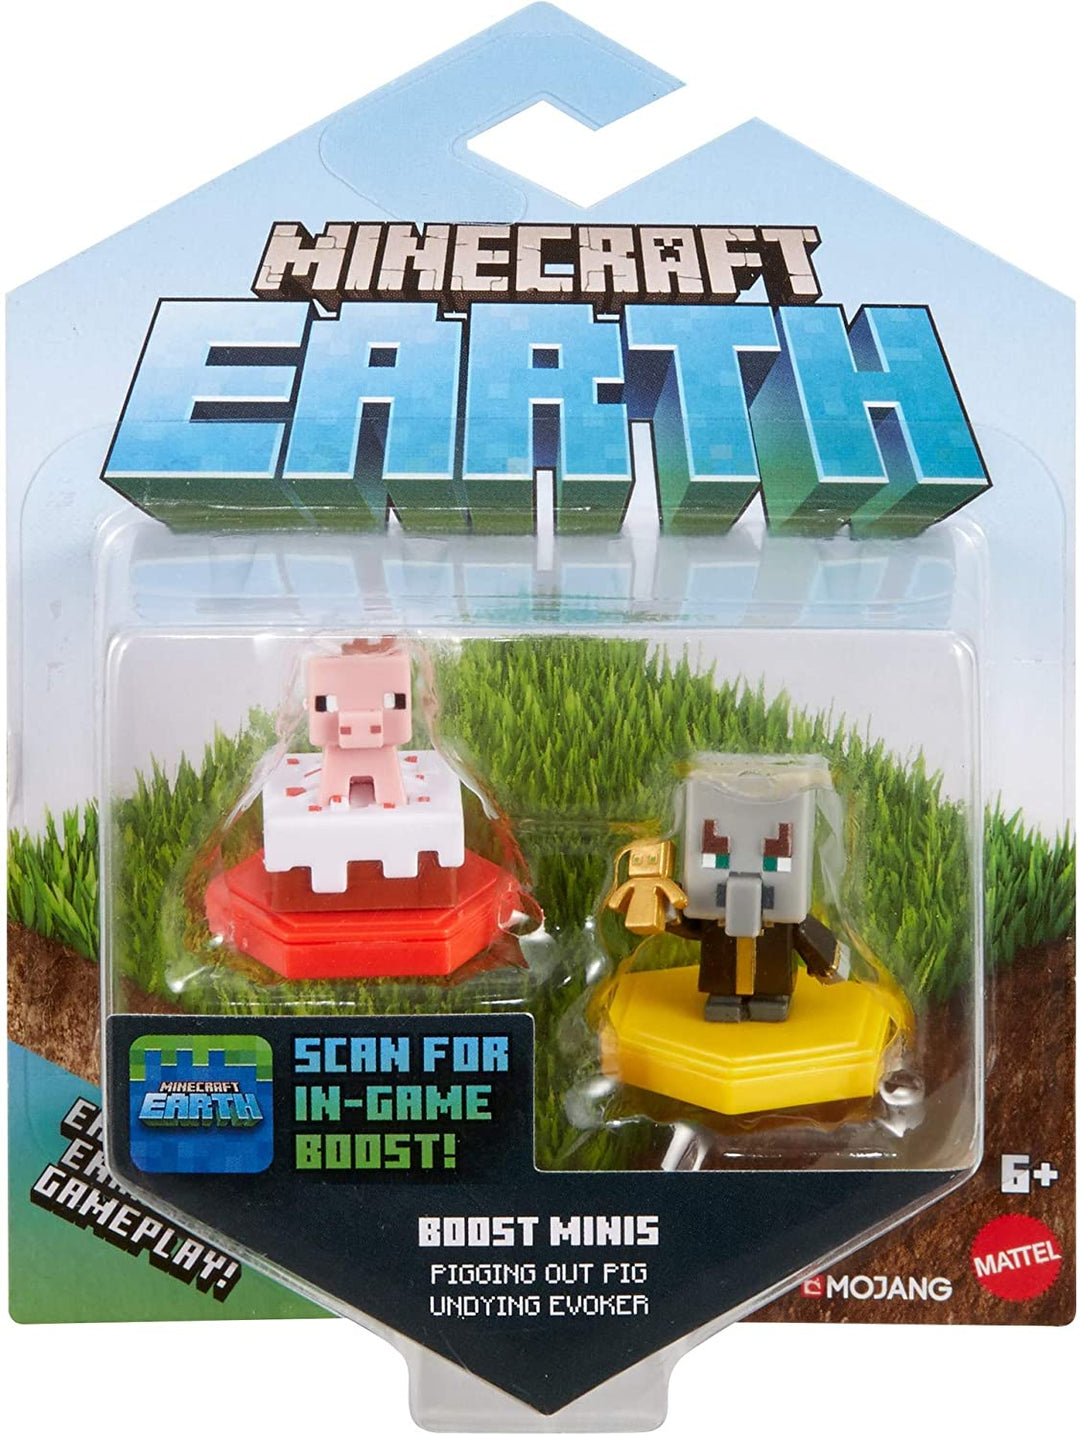 MINECRAFT Earth BOOST MINIFIGUREN 2ER-PACK NFC-Chip-Spielzeug, Earth Augmented Reality-Handyspiel, basierend auf dem Minecraft-Videospiel, ideal zum Spielen, Tauschen und Sammeln, Abenteuerspielzeug